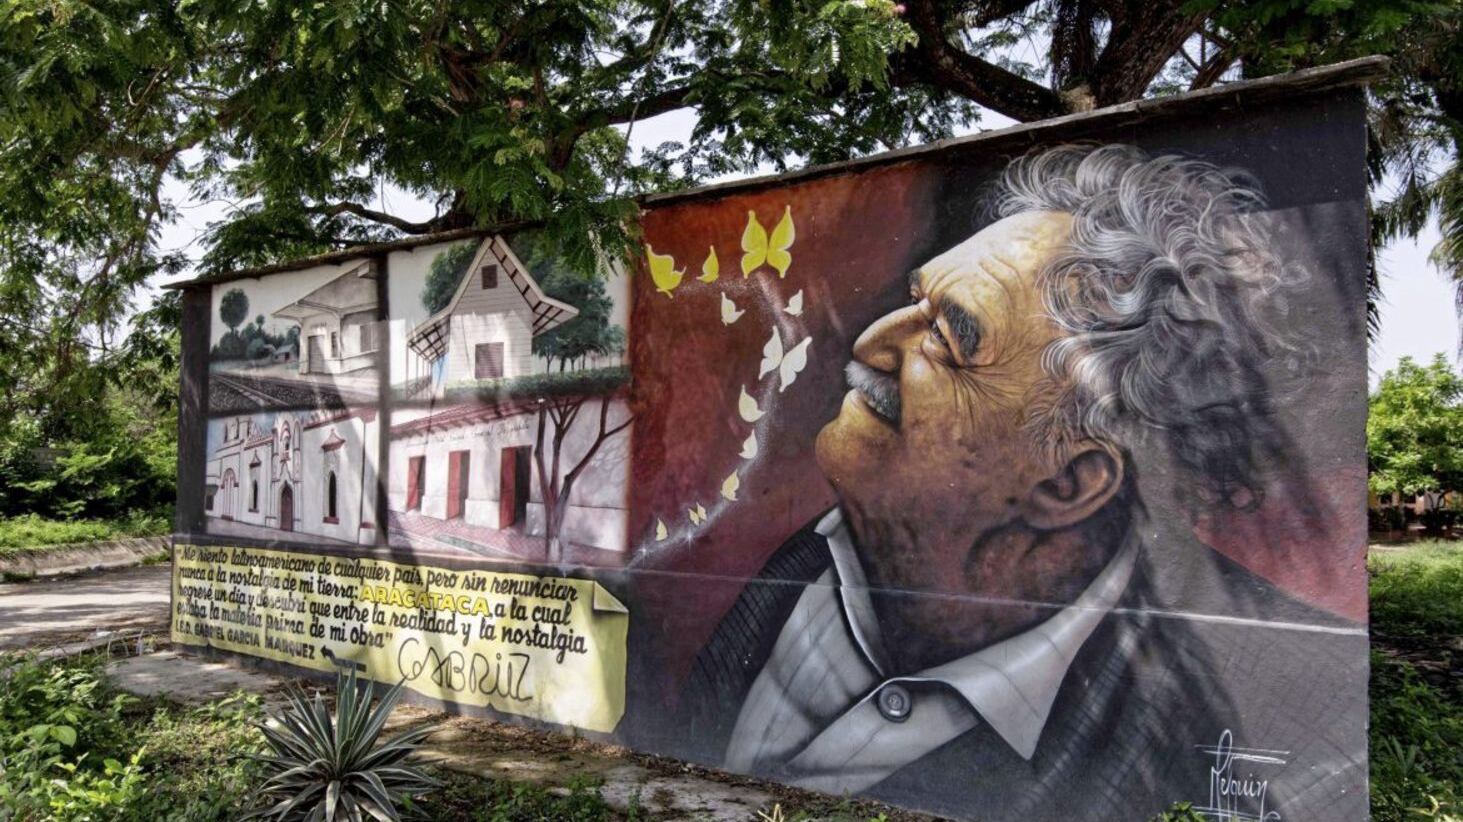 A mural celebrating Gabriel Garcia Marquez in Aracataca 